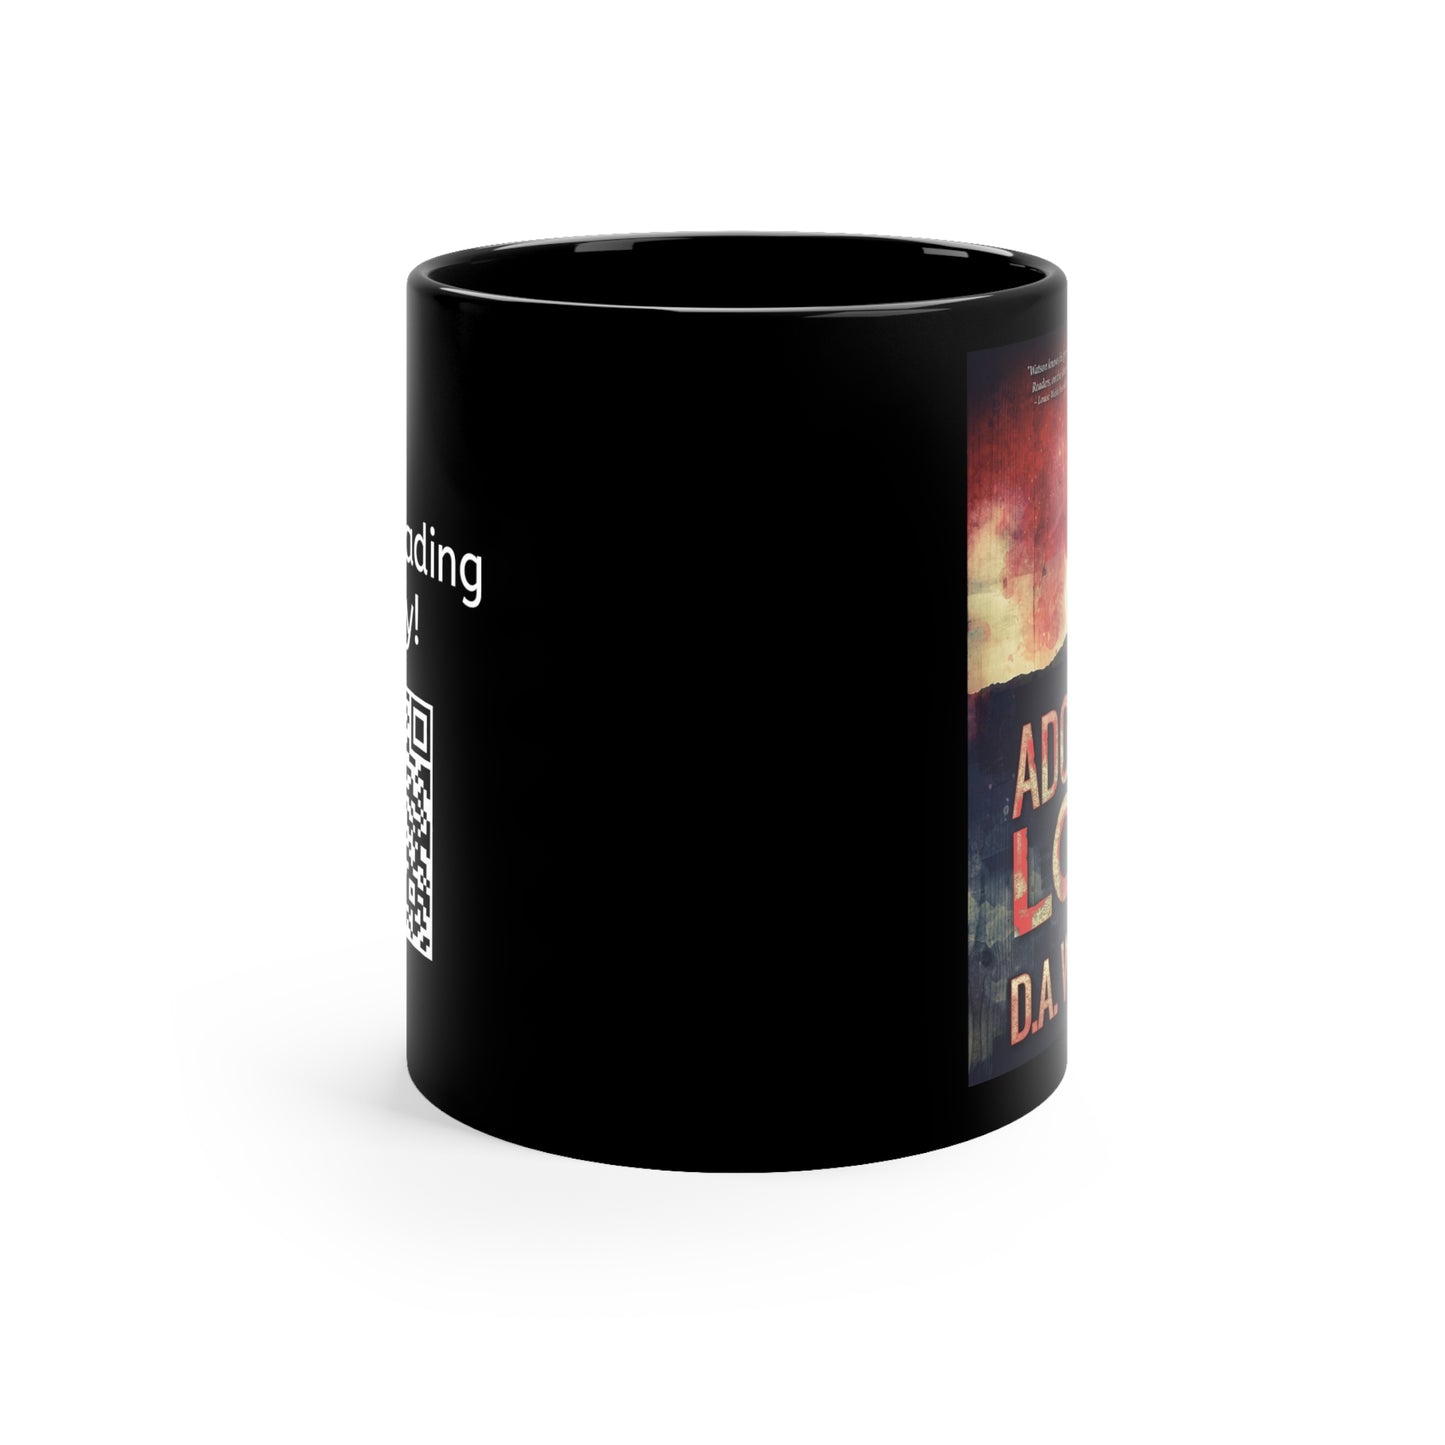 Adonias Low - Black Coffee Mug